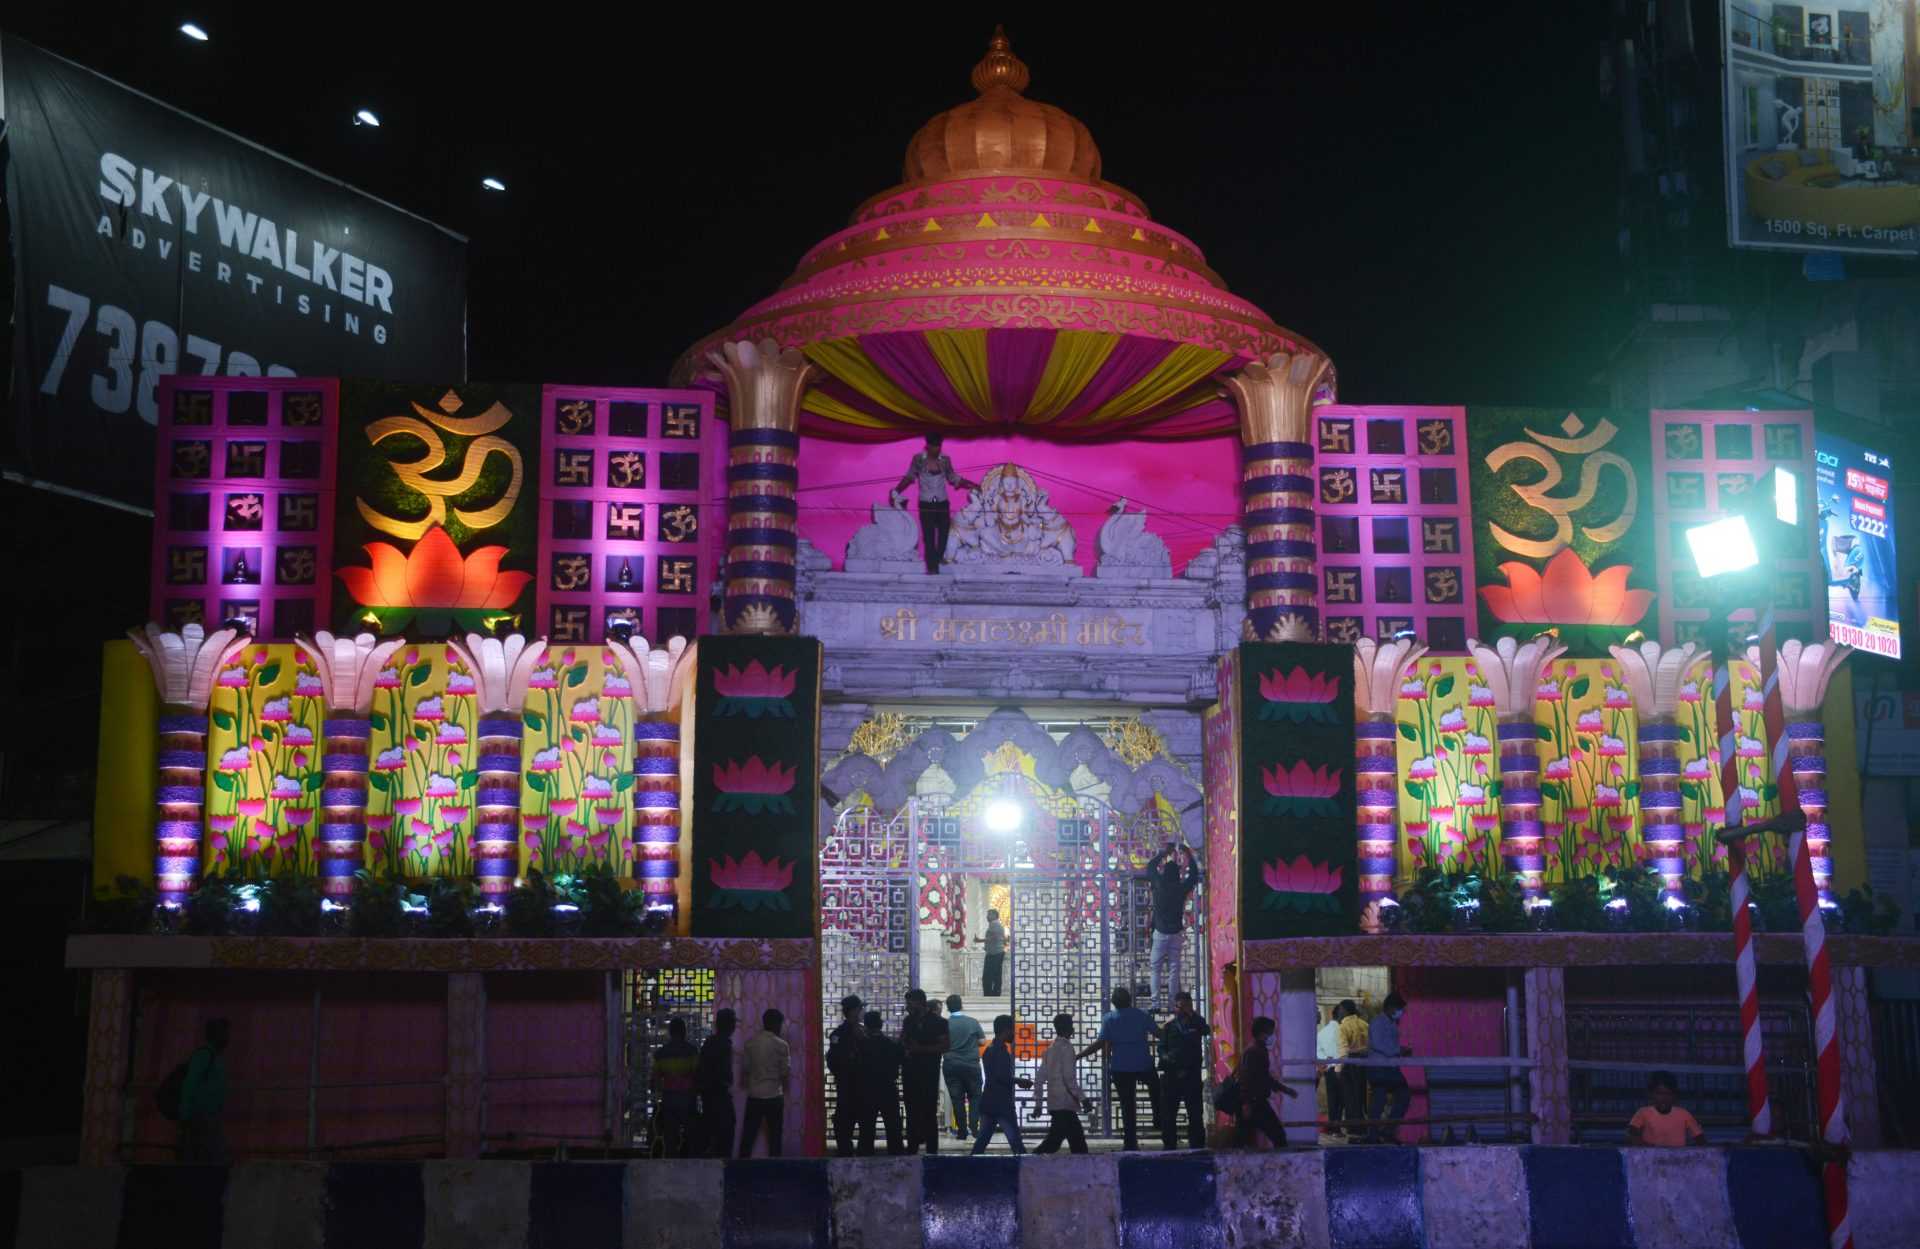 पोलीस आयुक्त अमिताभ गुप्ता यांच्या हस्ते महालक्ष्मी मंदिराच्या विद्युतरोषणाईचे उदघाटन